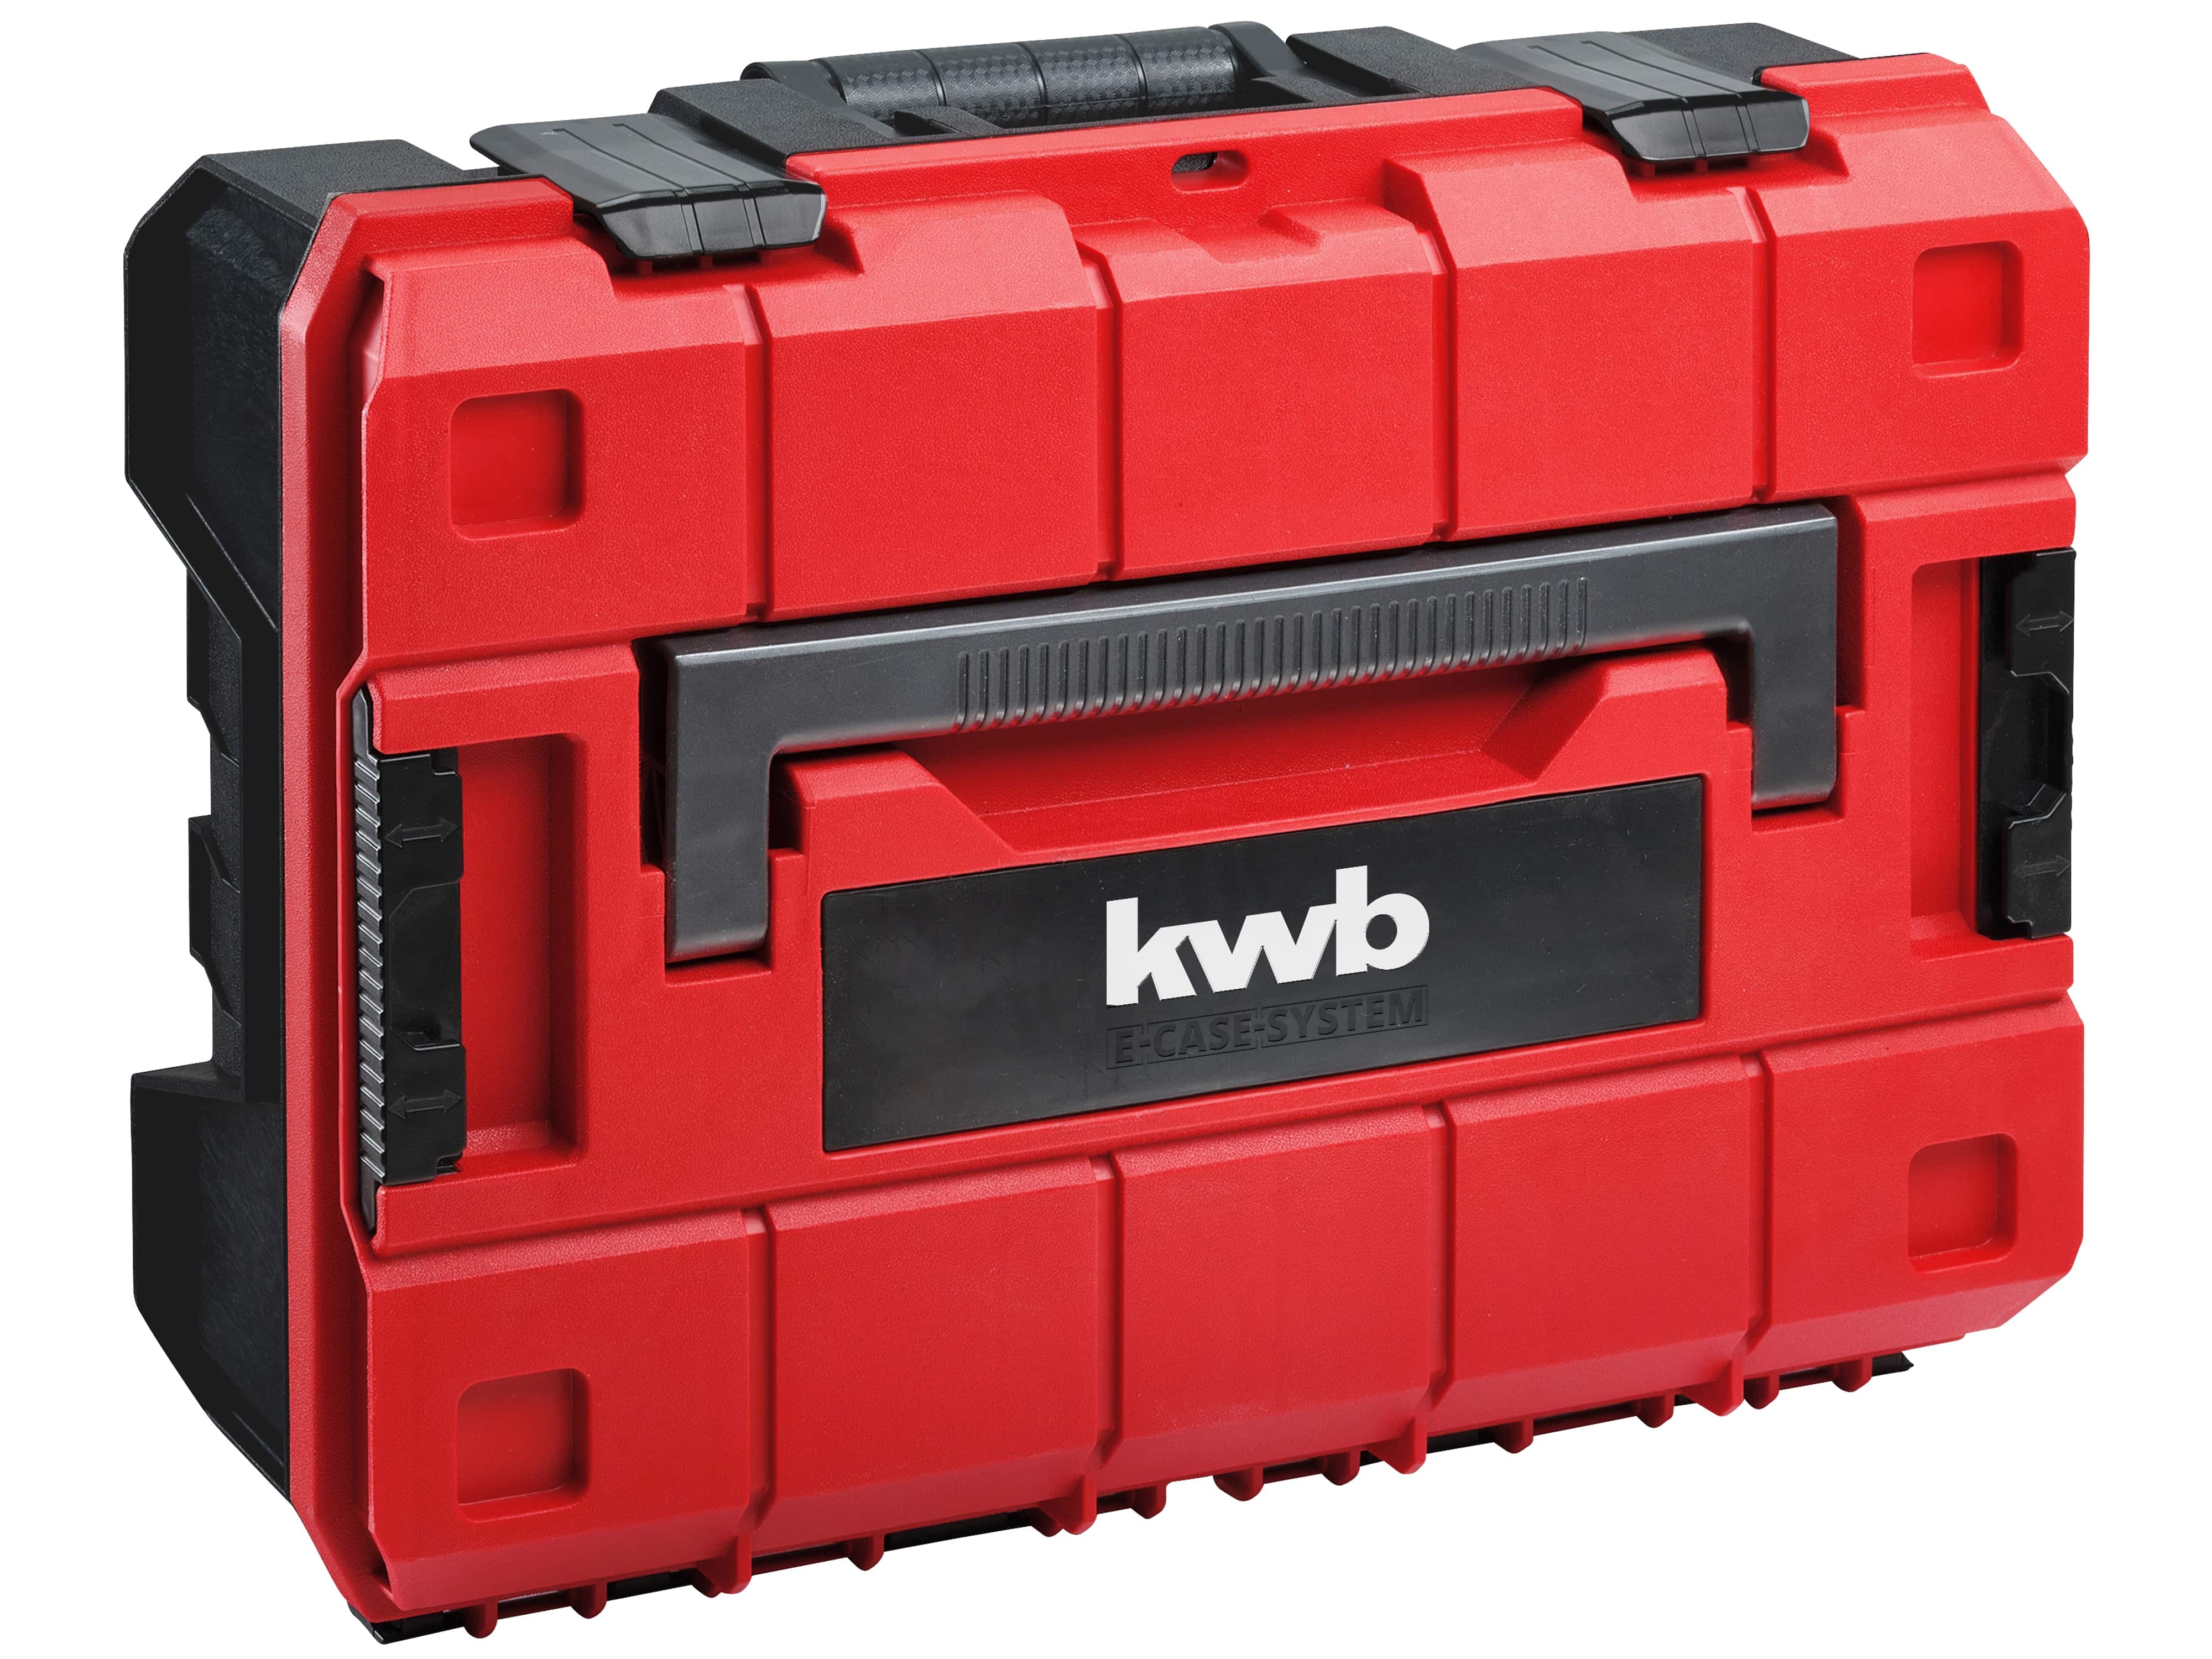 KWB Werkzeugkoffer, 340560, 80-teilig